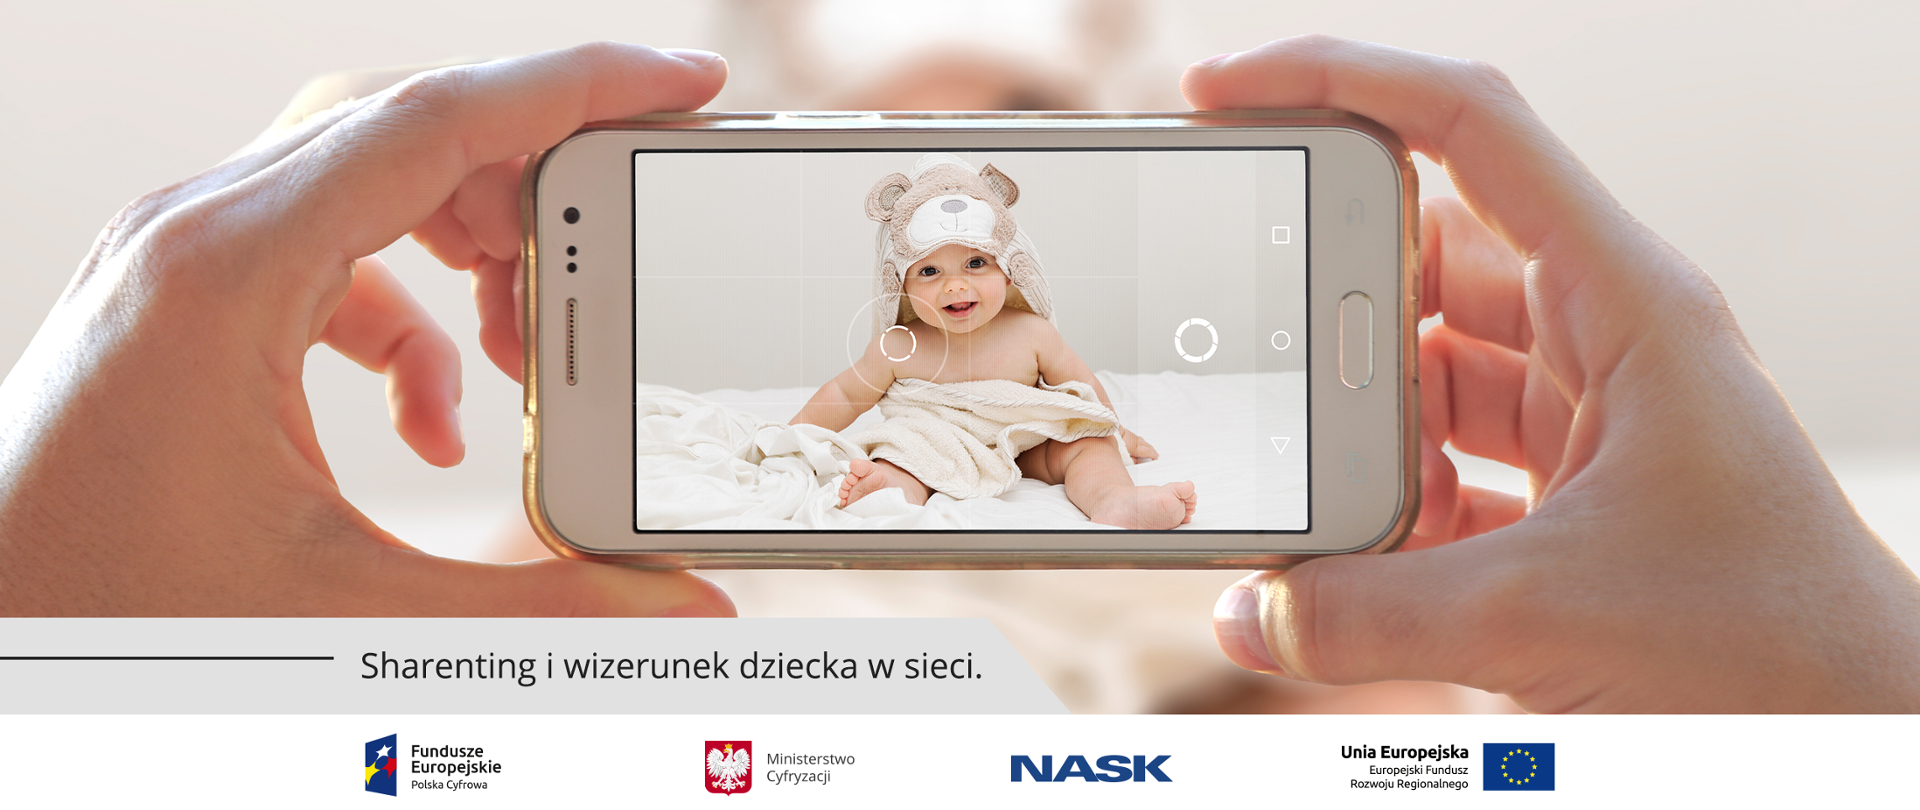 Bliskie ujęcie dłoni trzymających w poziomie telefon komórkowy podczas robienia zdjęcia. Na ekranie widać siedzącego na łóżku niemowlaka po kąpieli. Dziecko przykryte jest ręcznikiem, na głowie ma kaptur w kształcie misia. W lewym dolnym rogu obrazka napis: Sharenting i wizerunek dziecka w sieci.